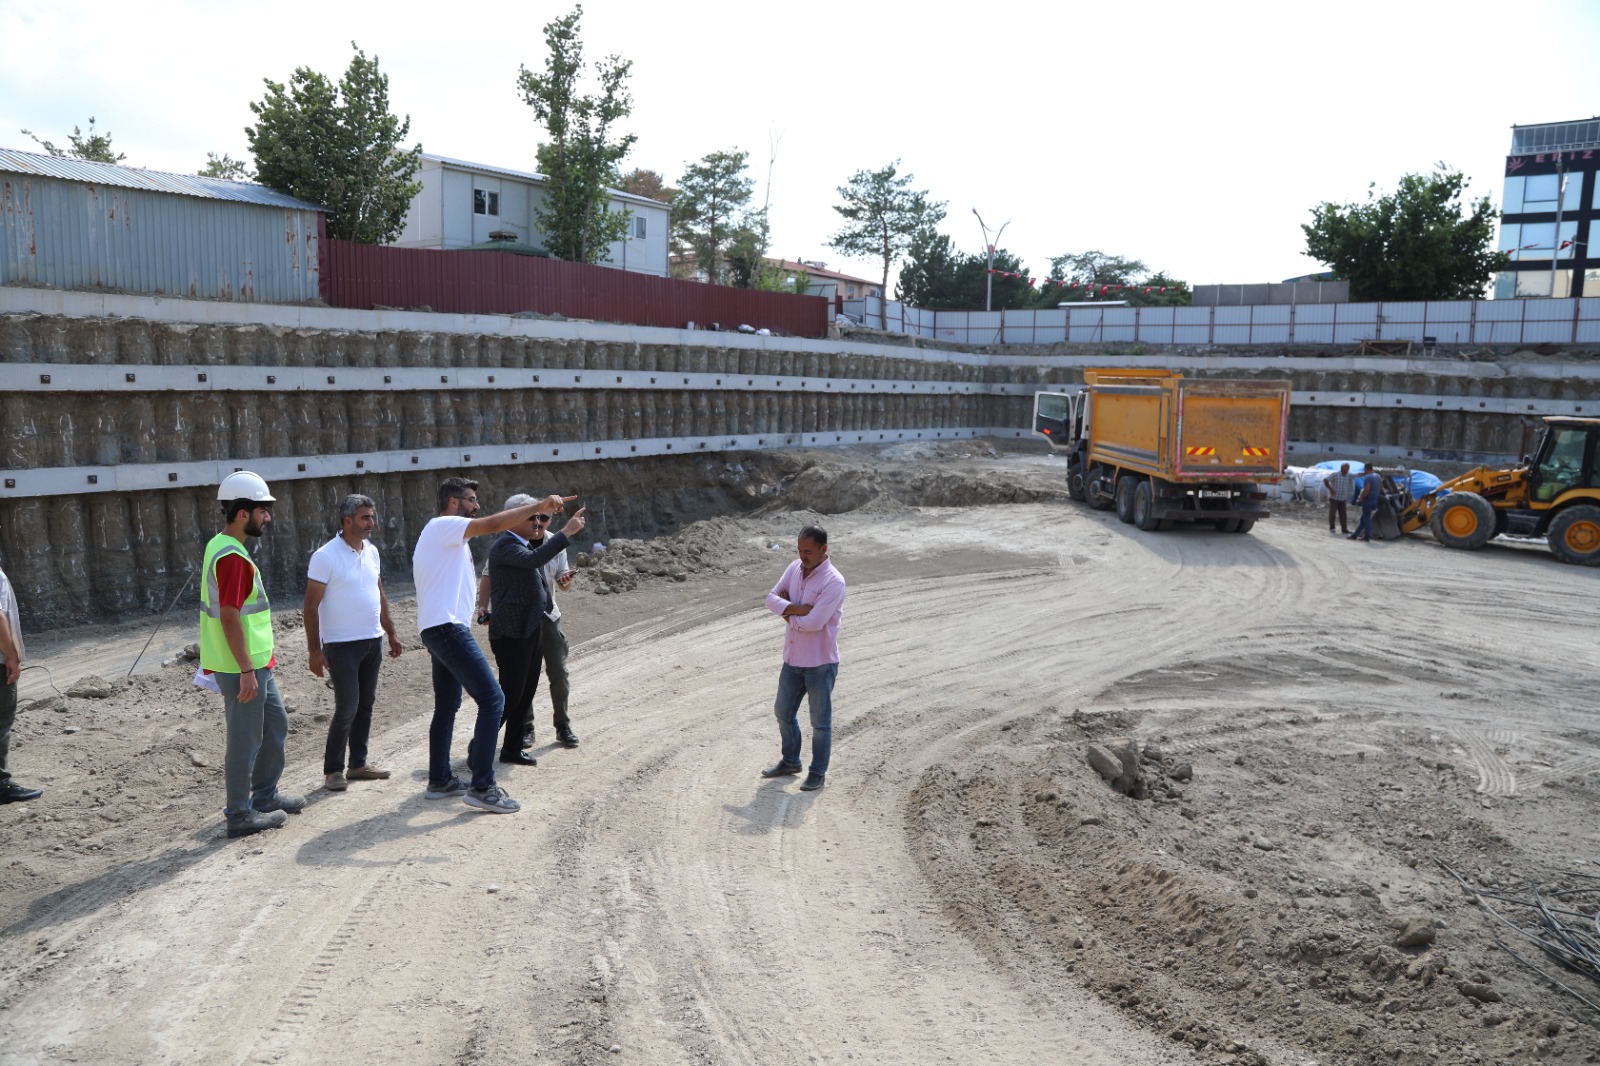 Sayın Erzincan Valisi, Üniversite Vakfı Yaşam Merkezi inşaat sahasında incelemelerde bulundu.